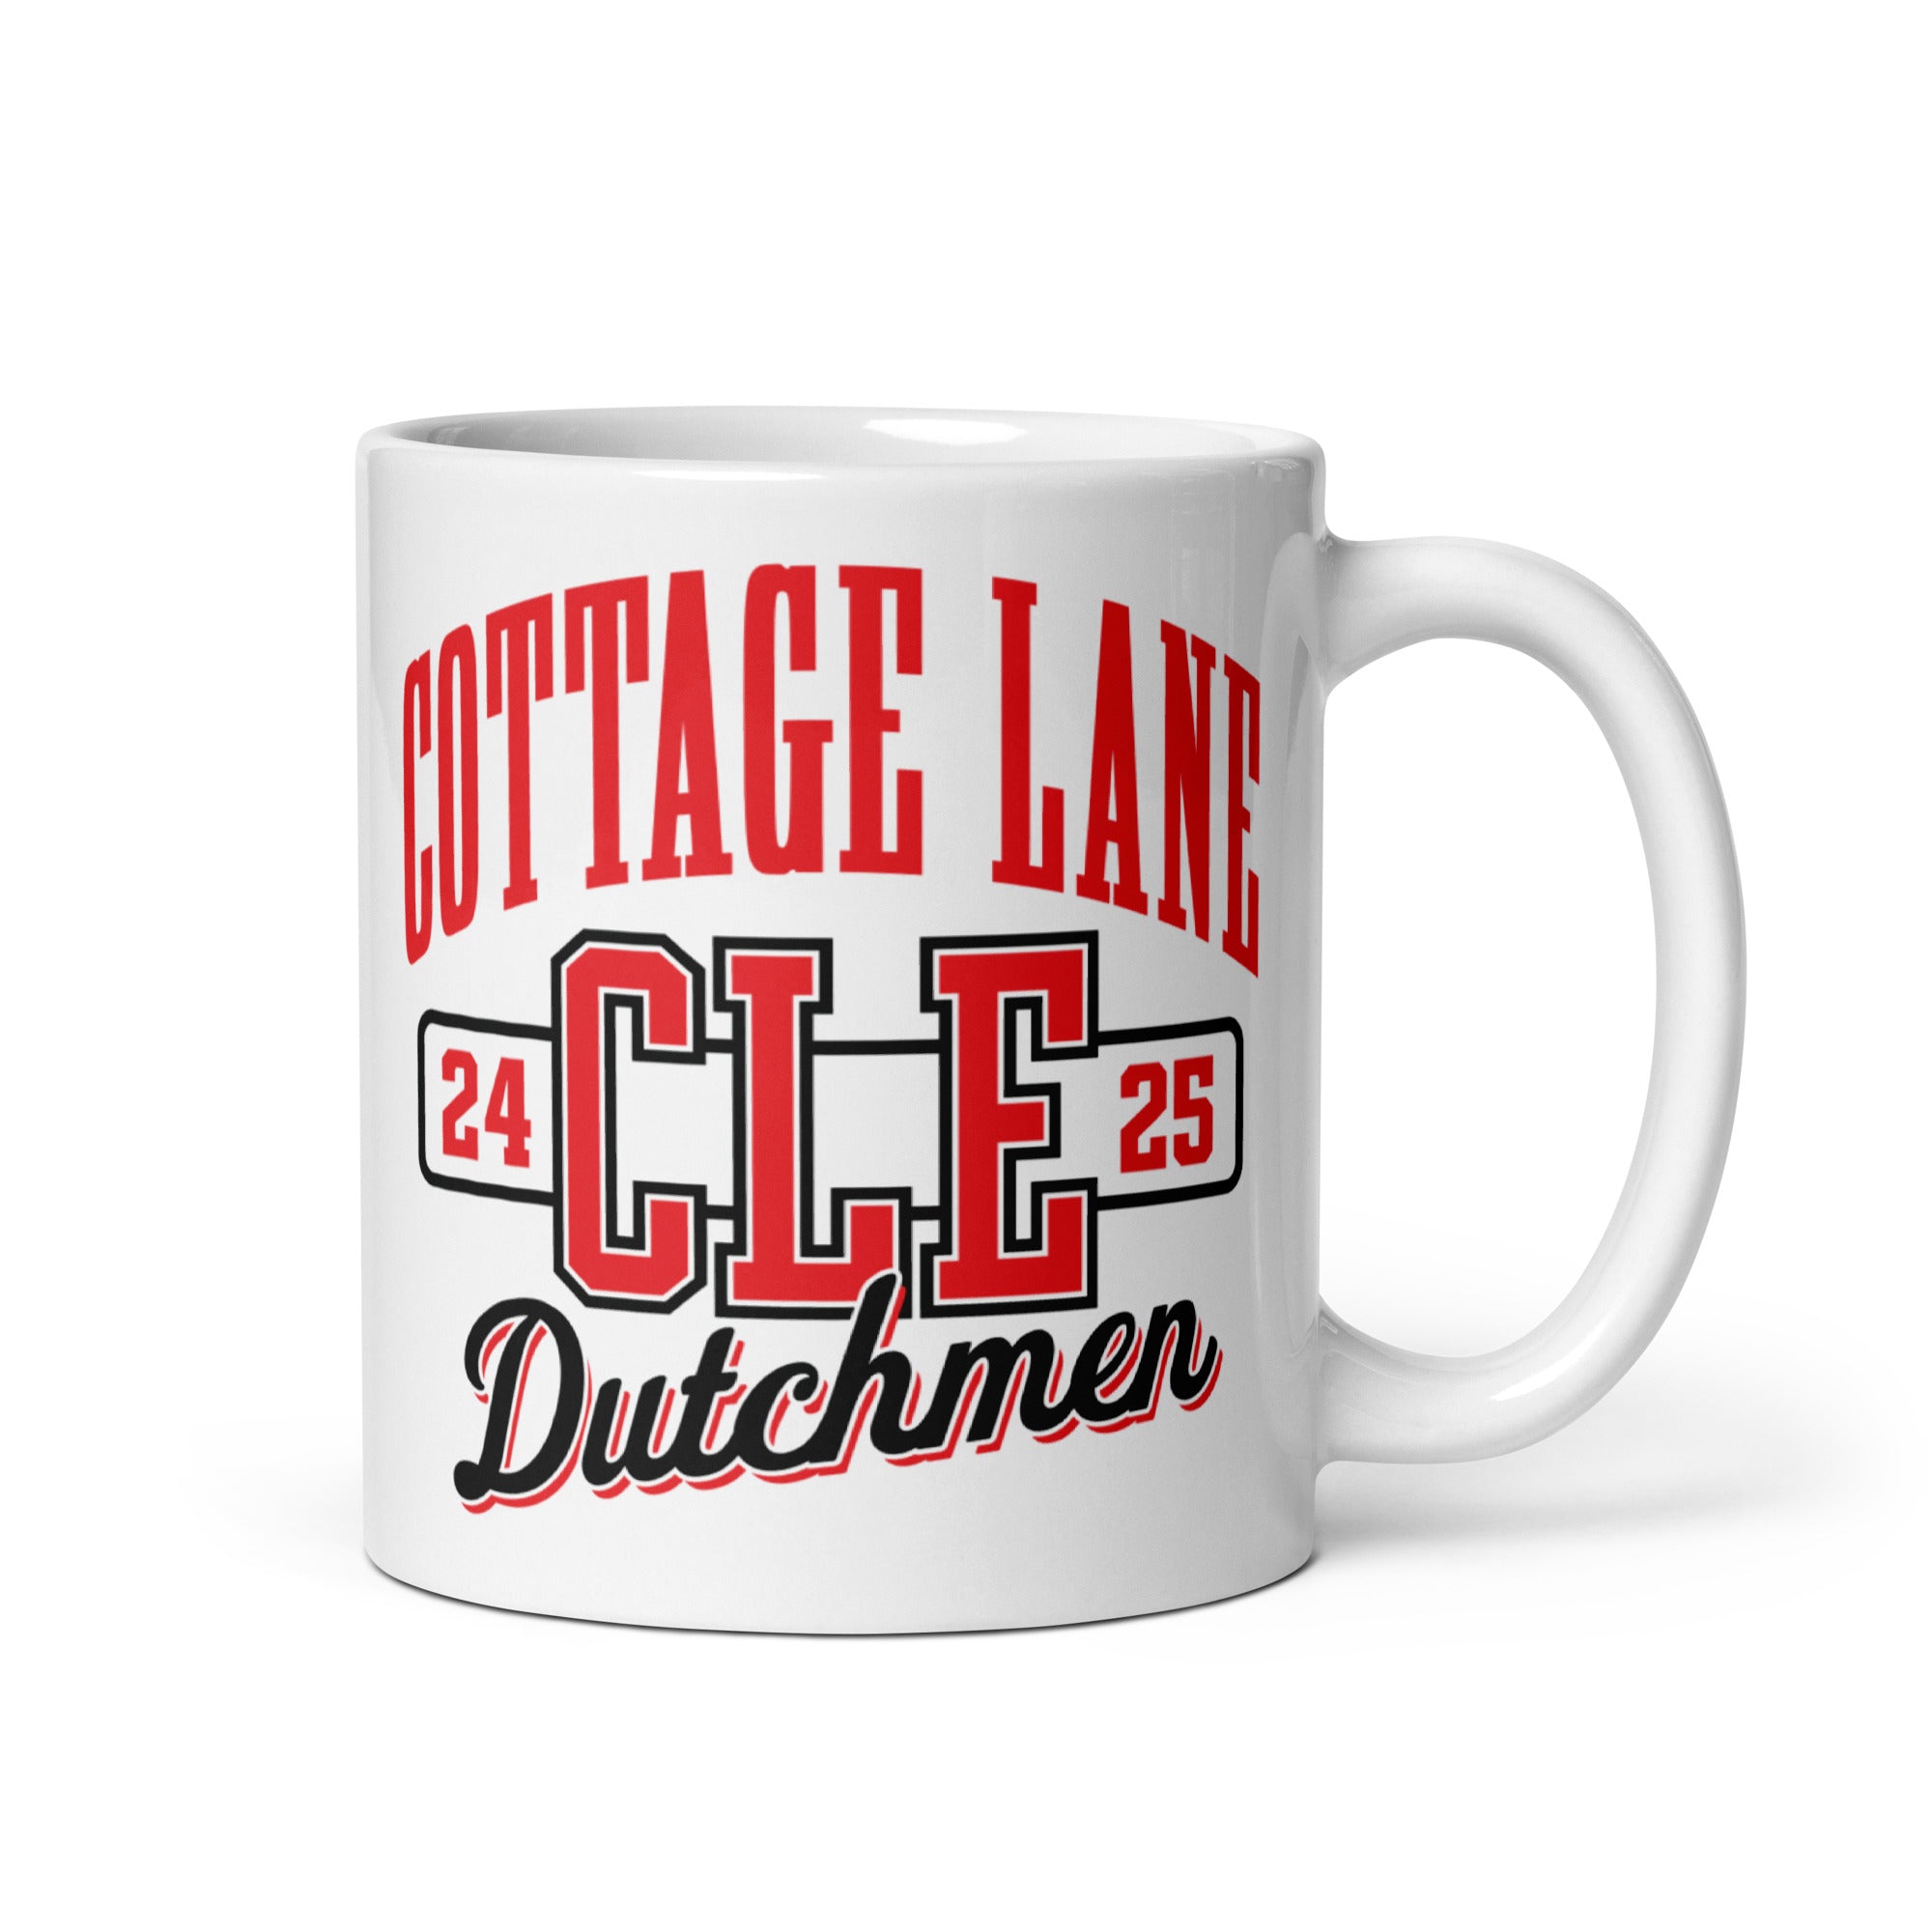 Cottage Lane Elementary White glossy mug